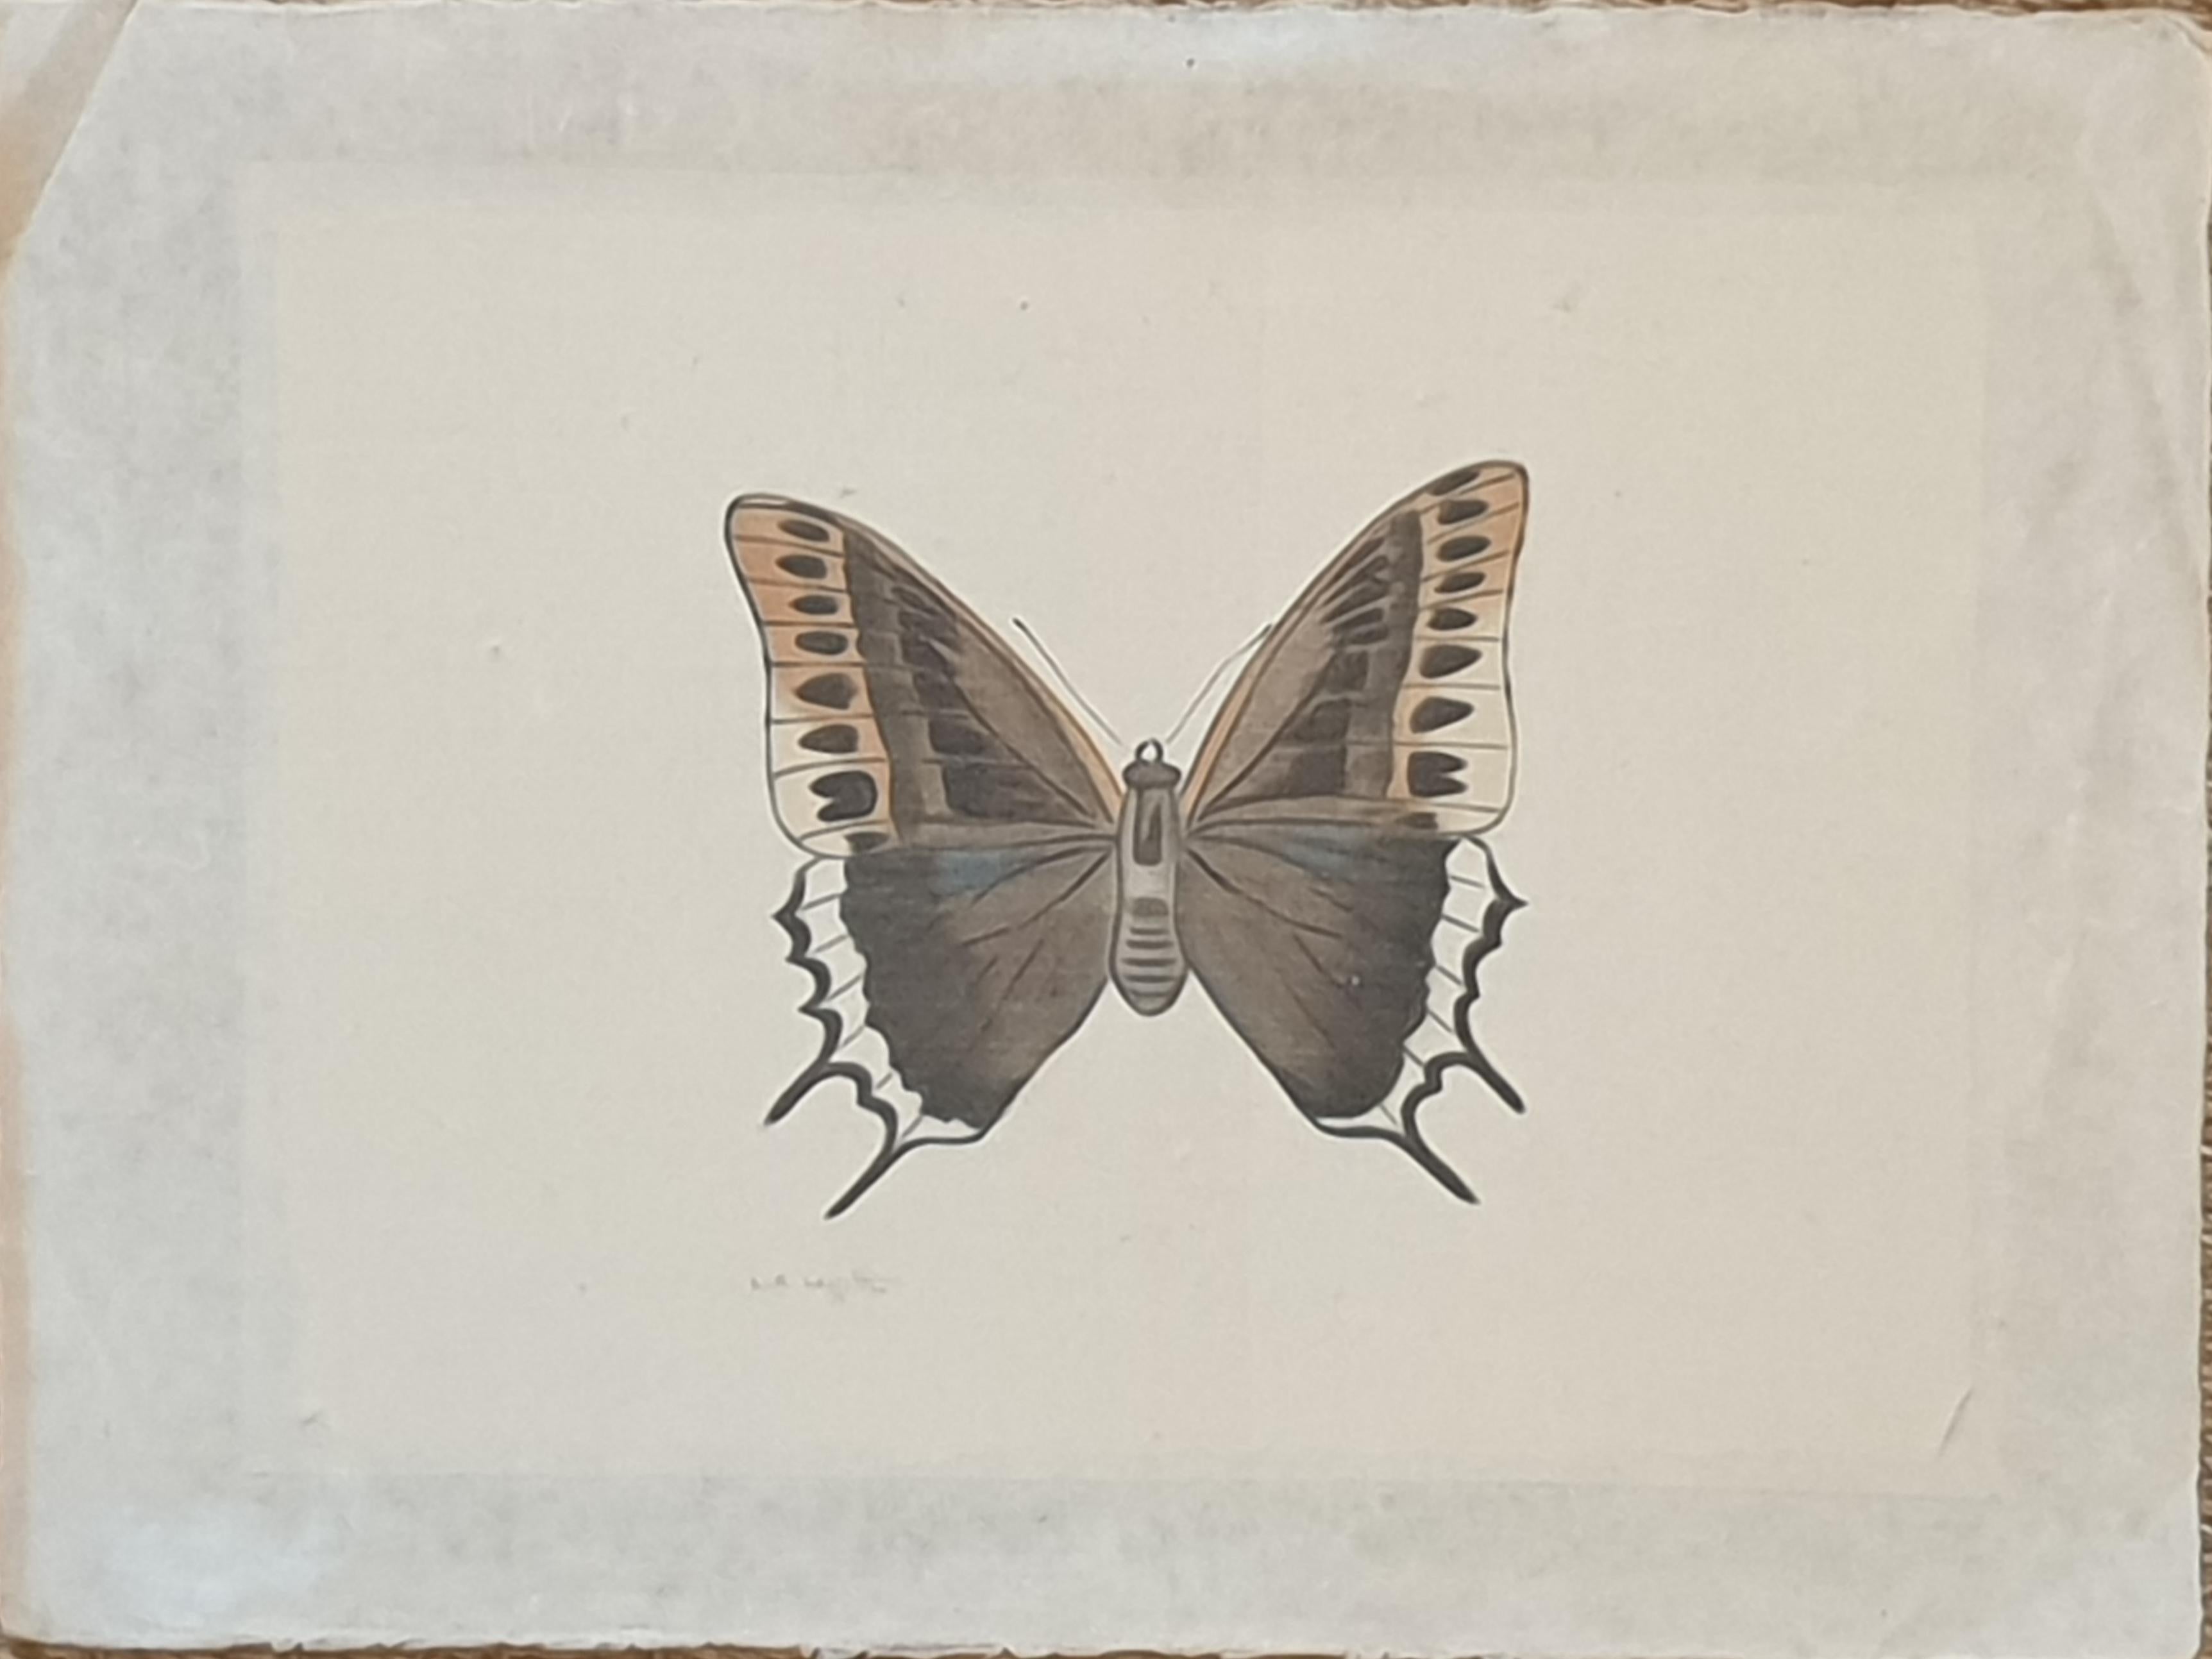 Une des quatre aquarelles de papillons sur soie, appliquées sur du papier fait main, avec des bords coupés à la main, par l'artiste française La Roche Laffitte. Signé en bas à gauche. (Les 3 autres articles sont disponibles séparément)

Une étude